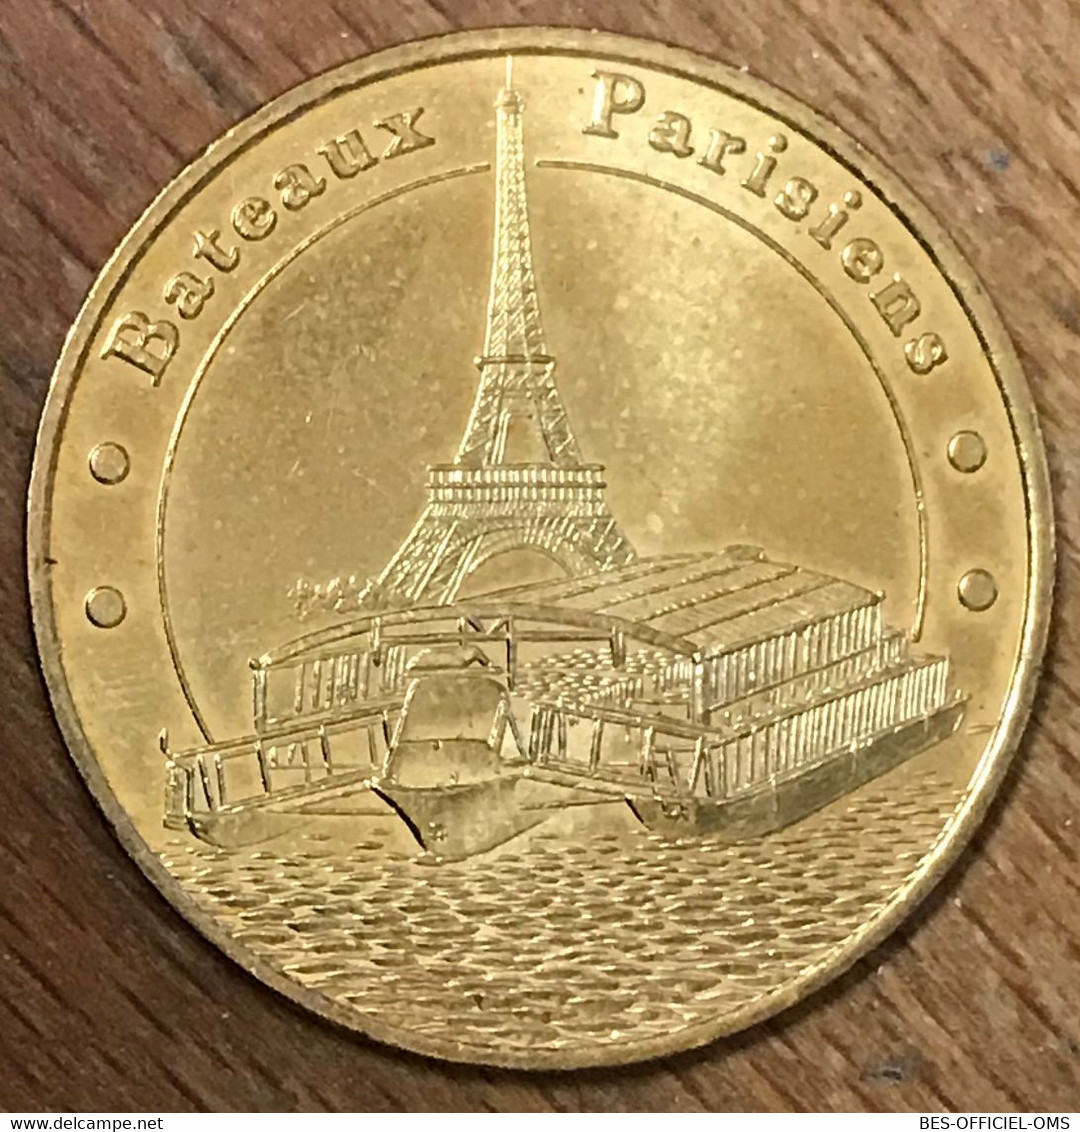 75007 PARIS BATEAUX PARISIENS MDP 2006 B MEDAILLE SOUVENIR MONNAIE DE PARIS JETON TOURISTIQUE MEDALS COINS TOKENS - 2006